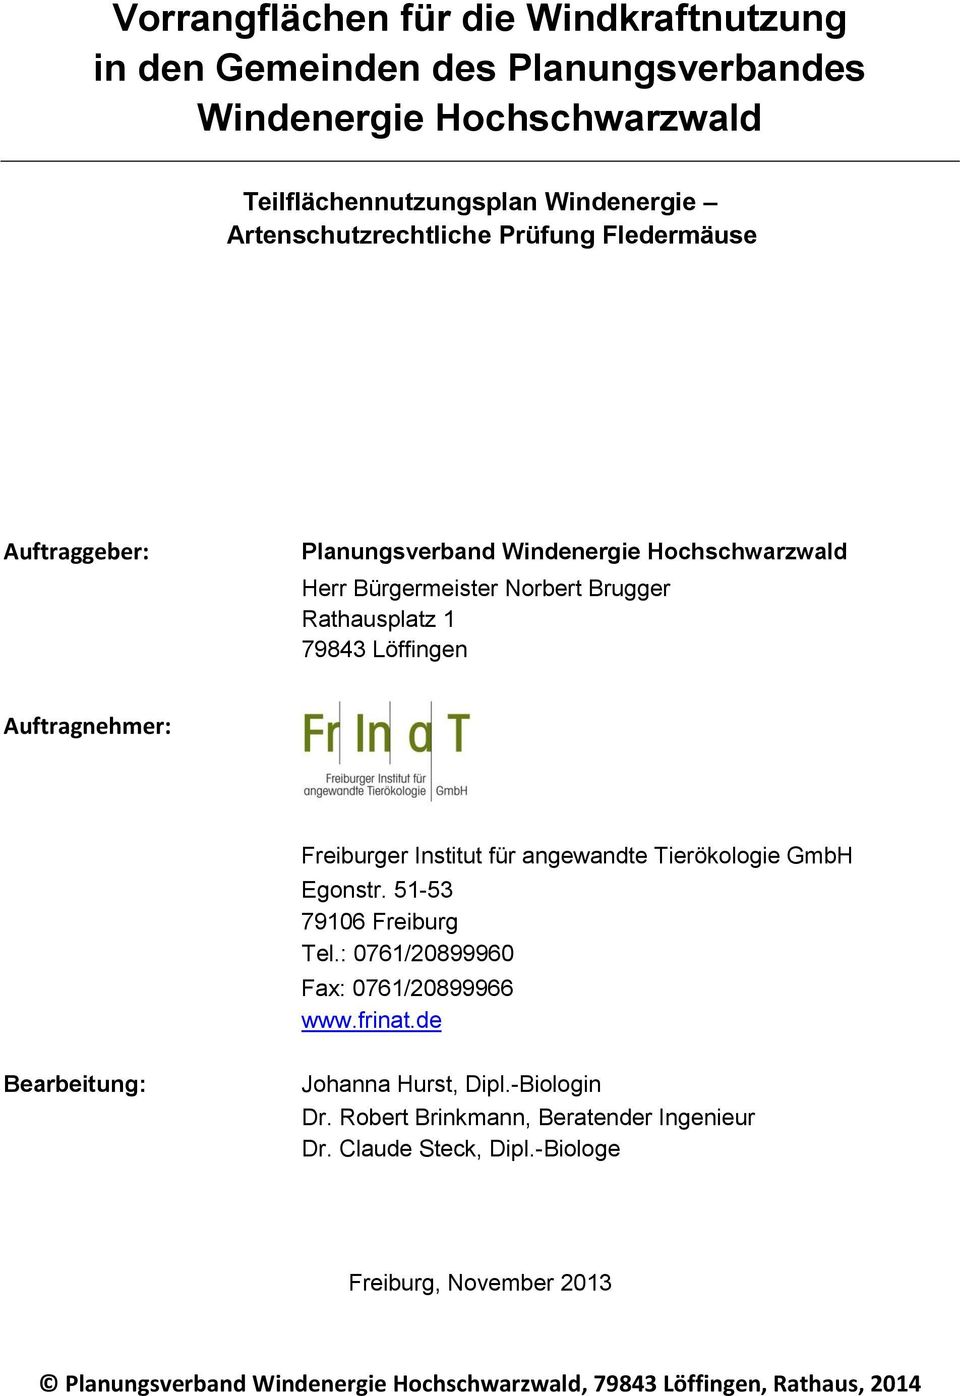 Institut für angewandte Tierökologie GmbH Egonstr. 51-53 79106 Freiburg Tel.: 0761/20899960 Fax: 0761/20899966 www.frinat.de Bearbeitung: Johanna Hurst, Dipl.